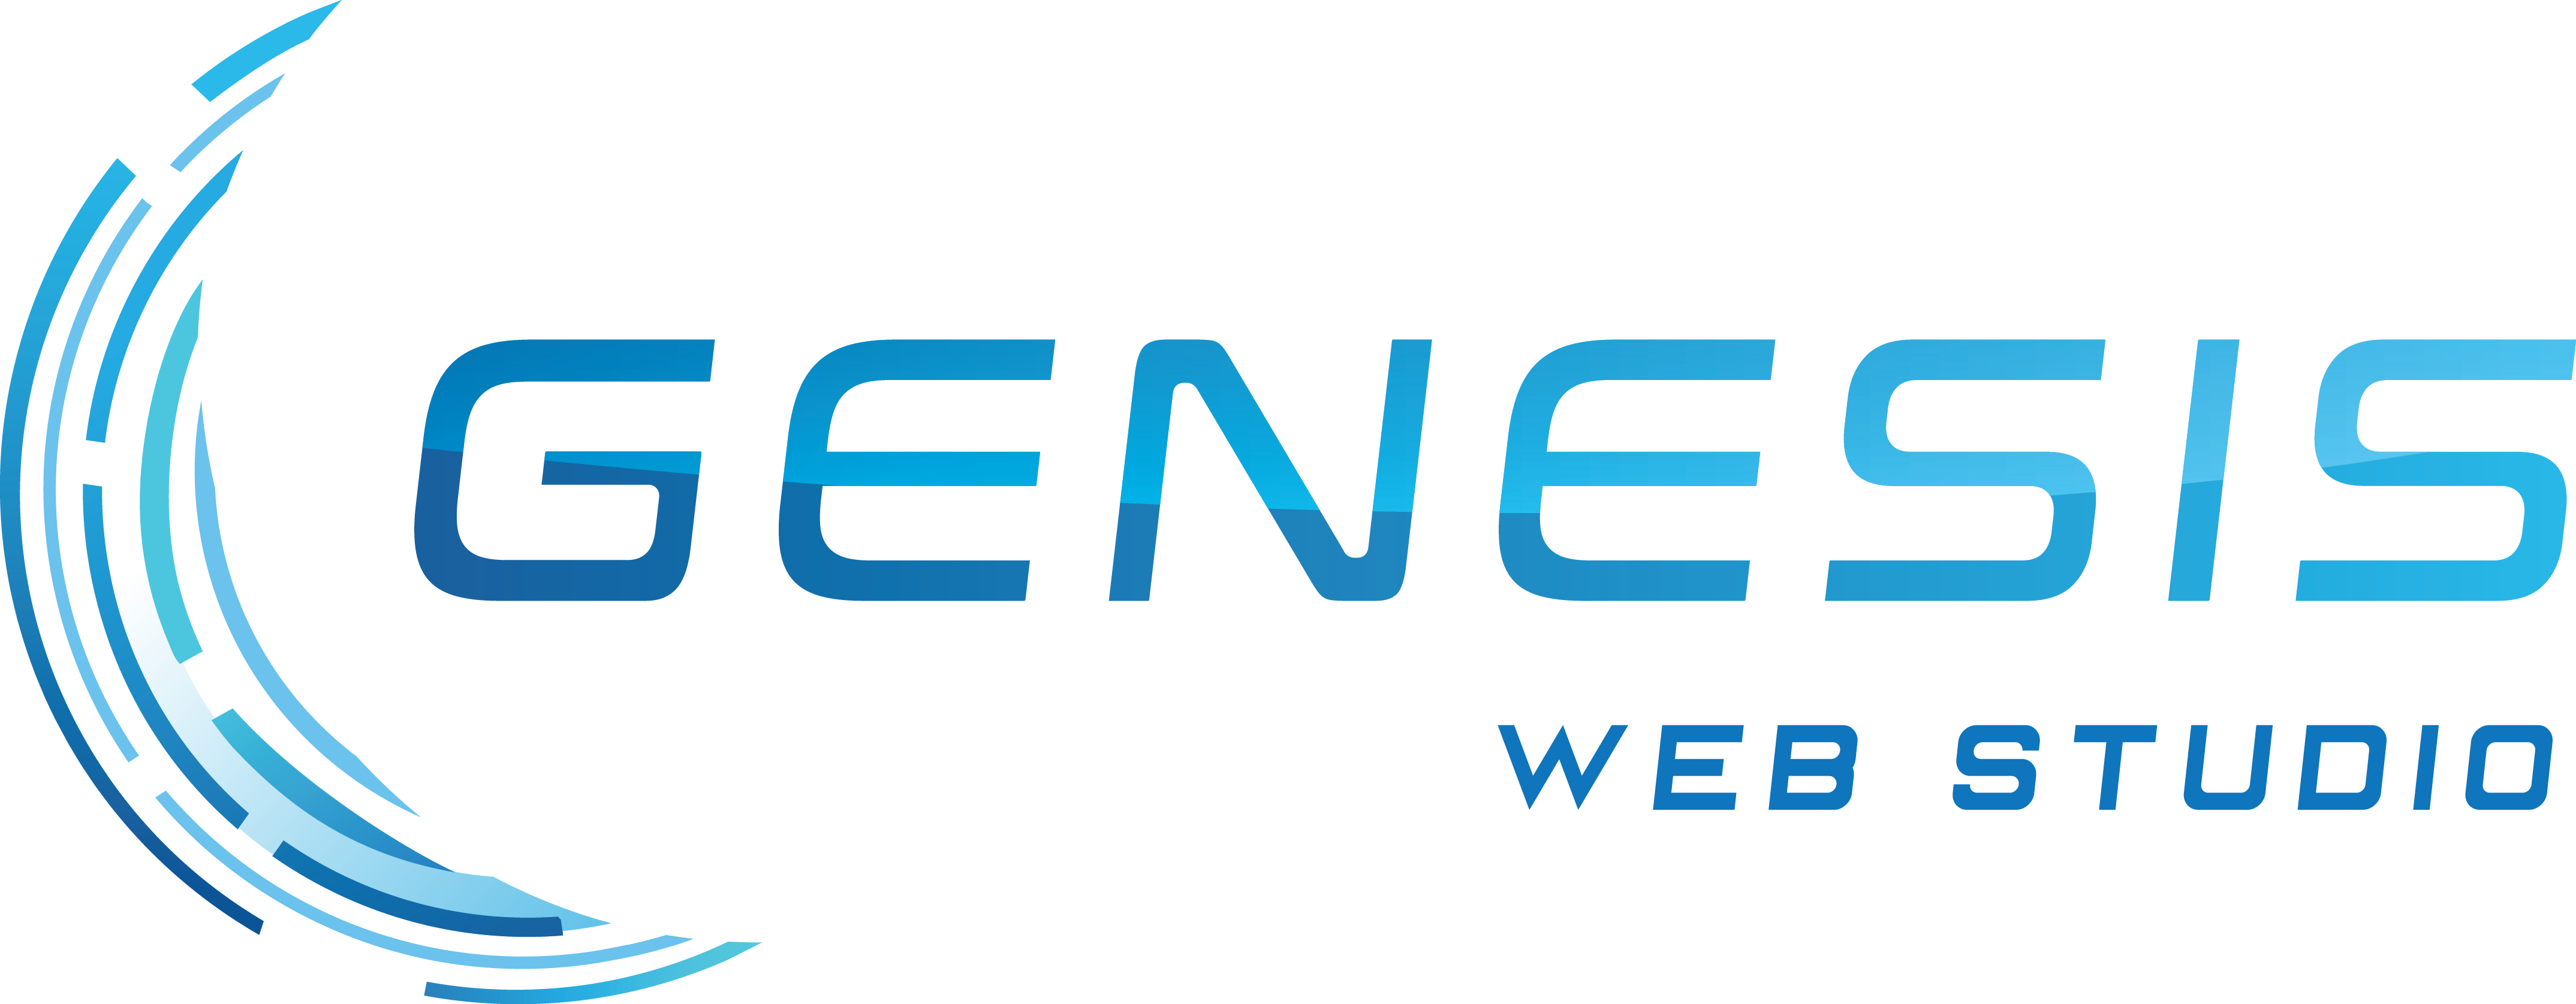 genesis-web-studio-logo-full.png